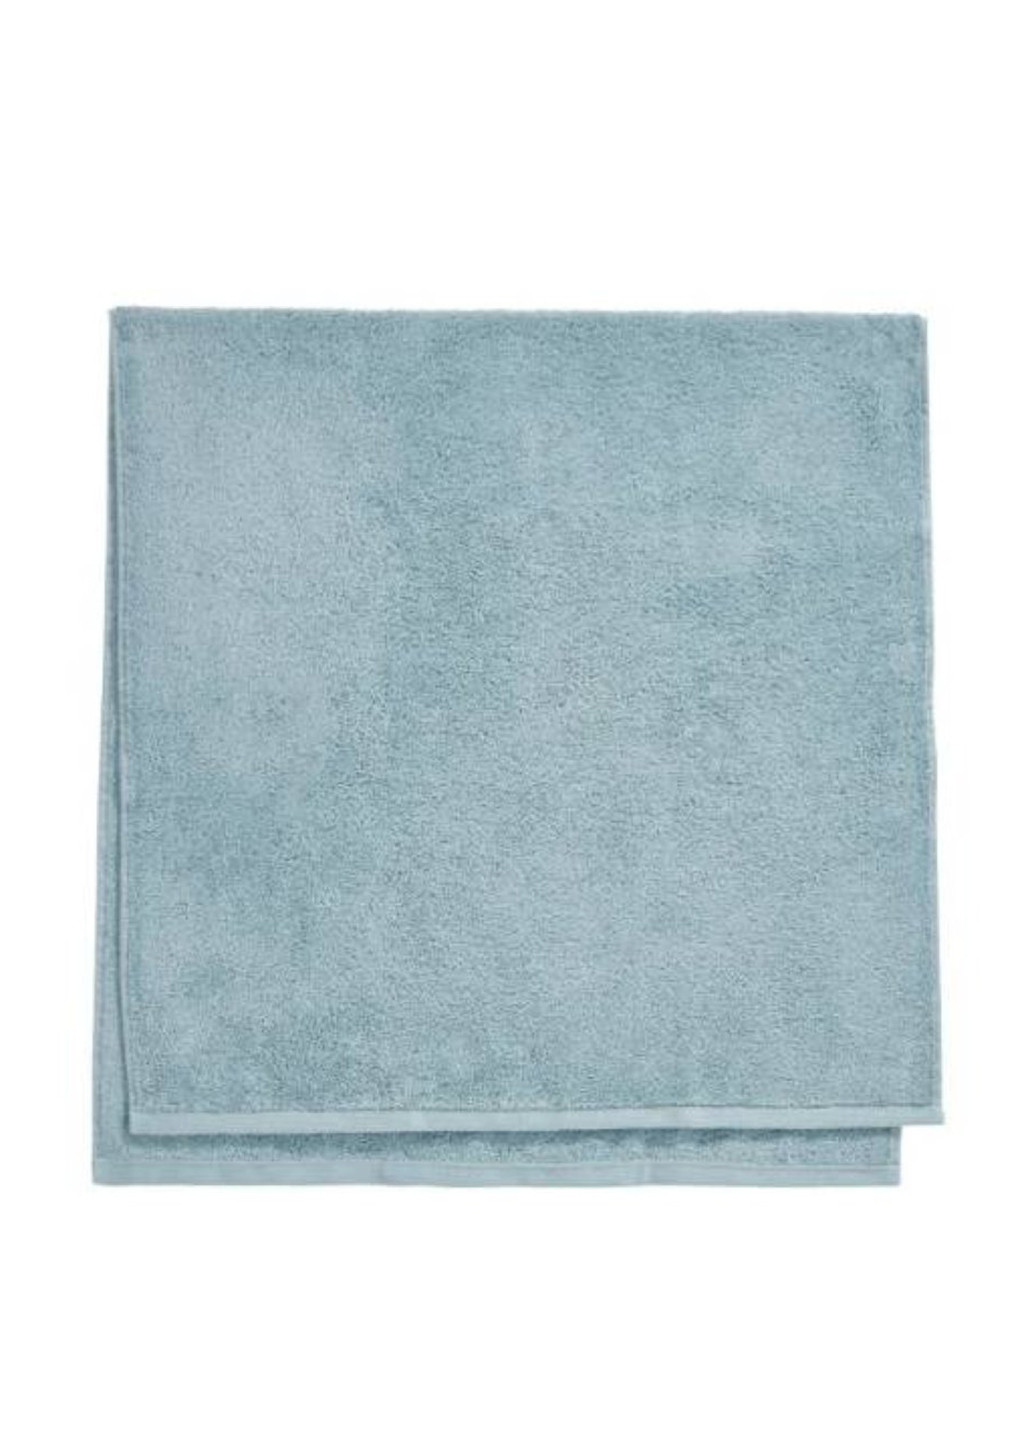 Butlers полотенце, 70х140 см однотонный голубой производство - Португалия